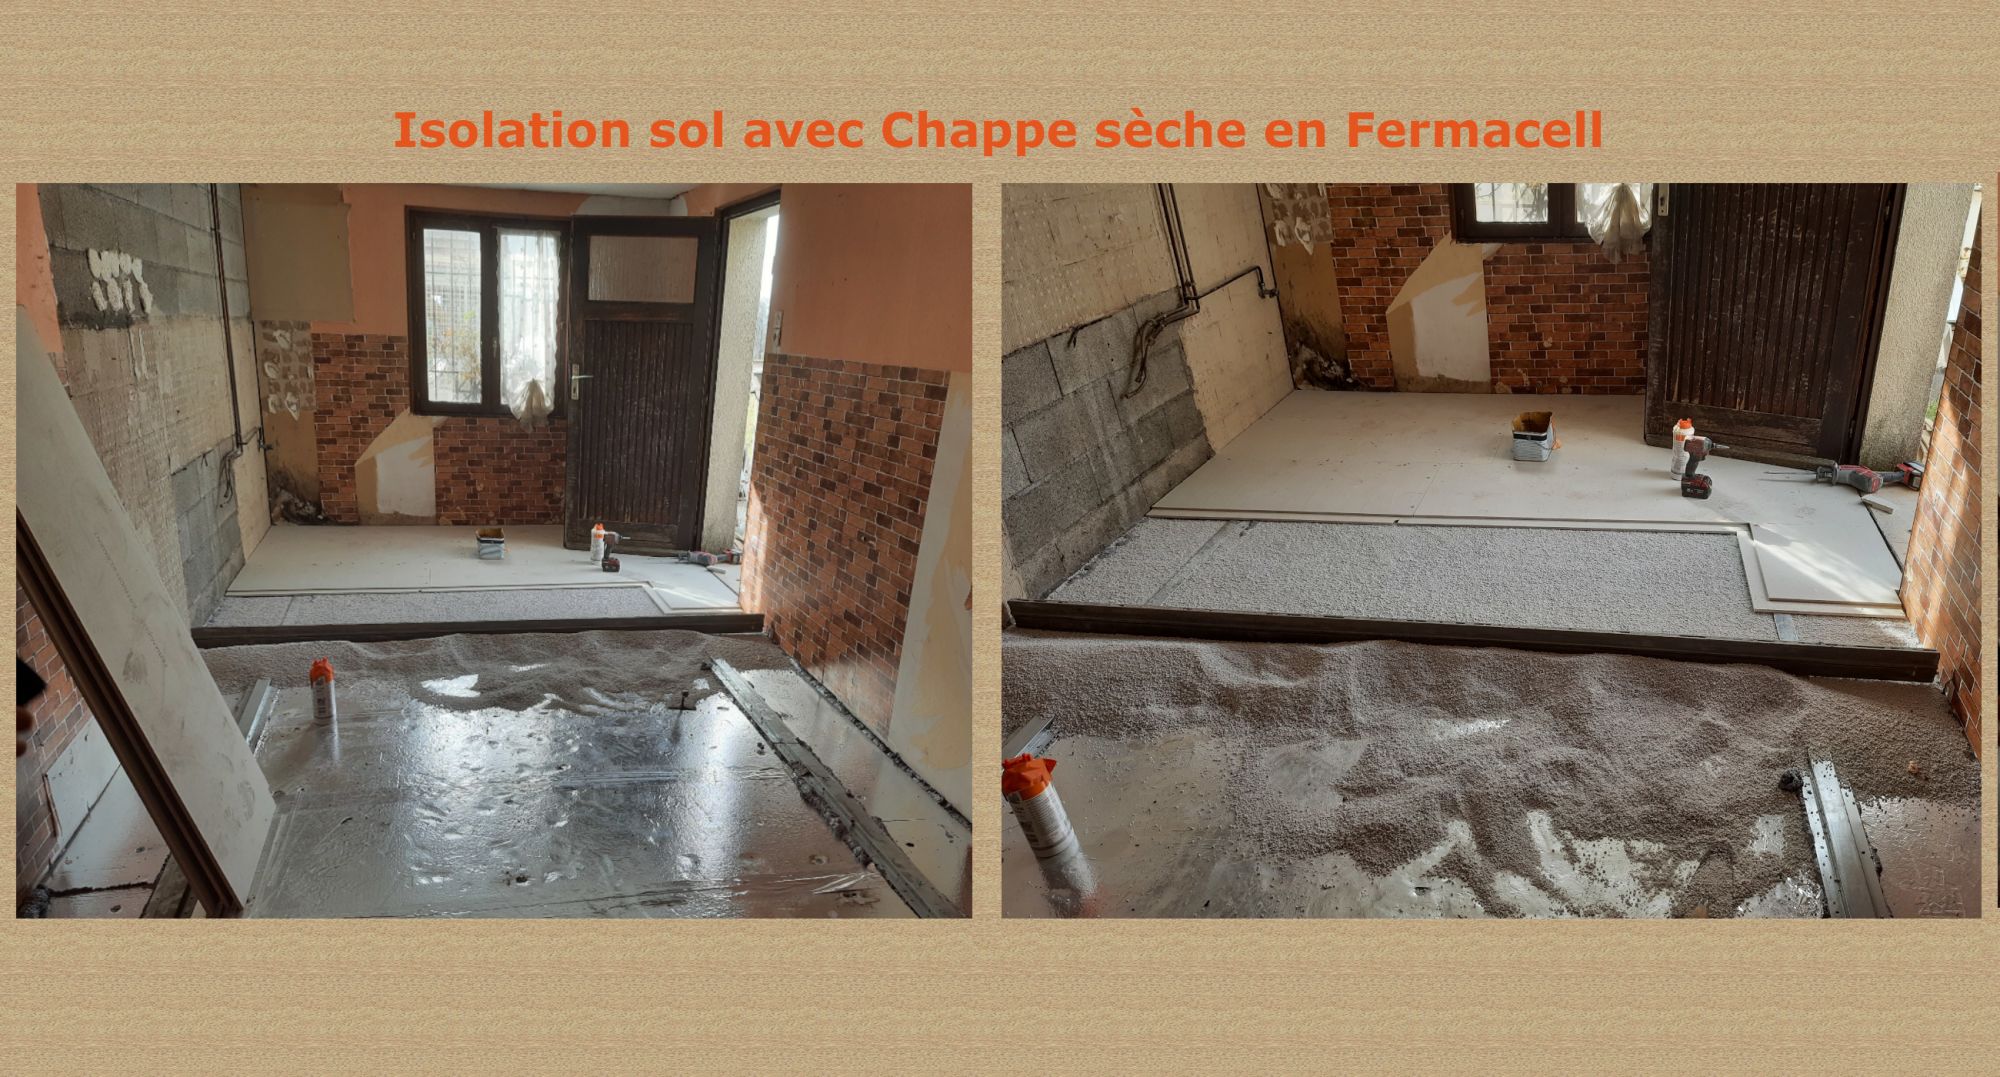 Isolation intérieure au sol avec Chape sèche en Fermacell à Vescemont près de Belfort Audincourt